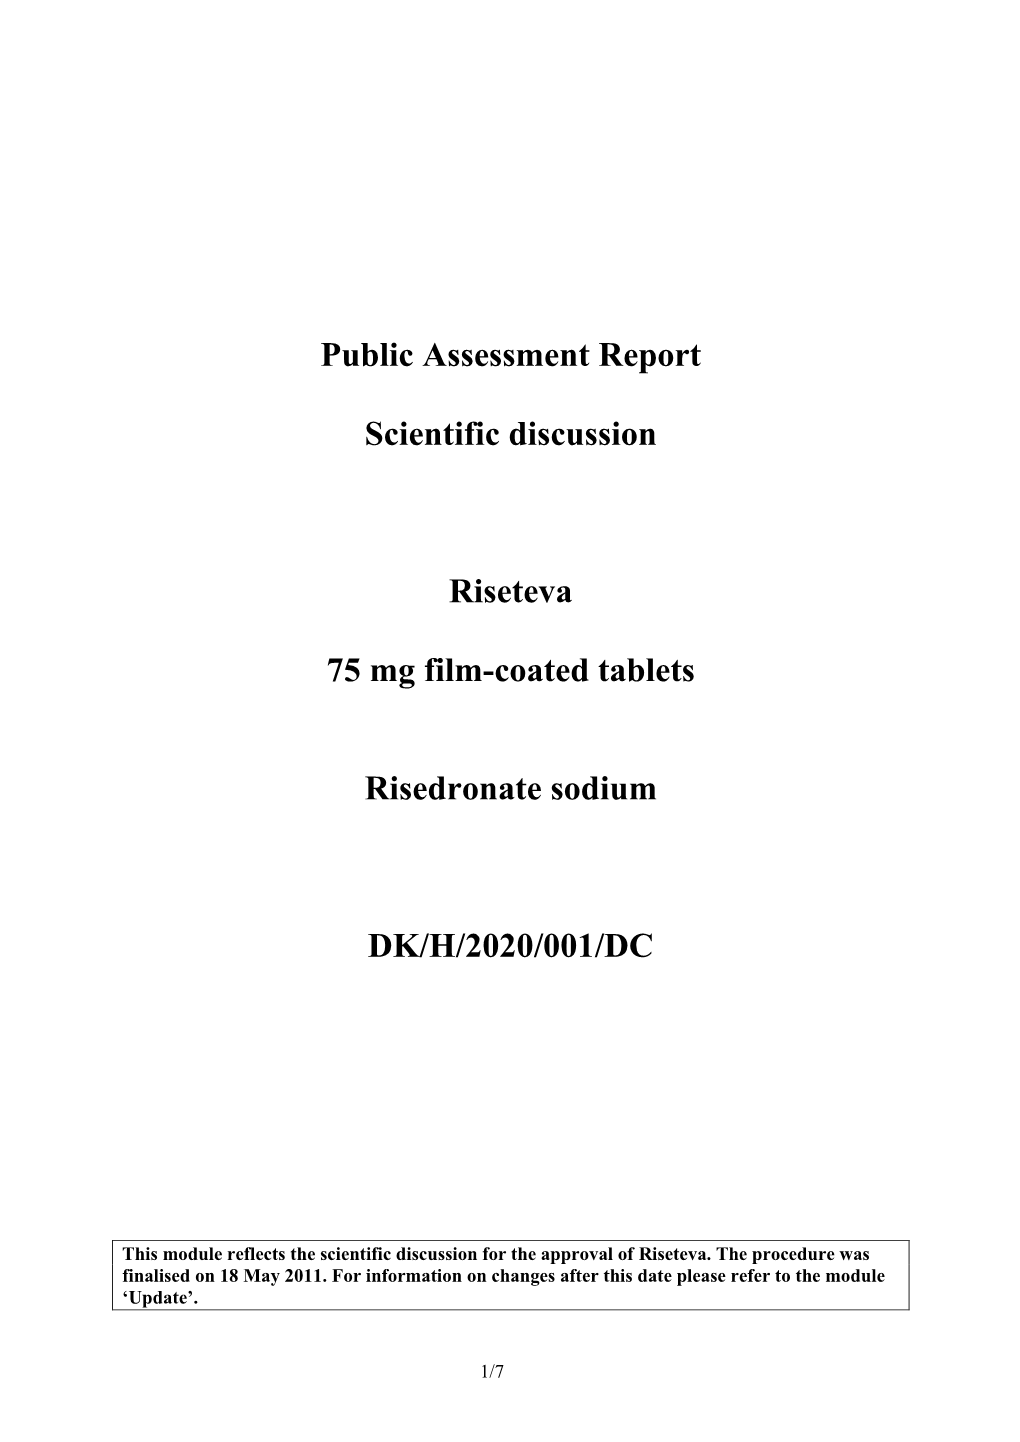 Public Assessment Report Scientific Discussion Riseteva 75 Mg Film